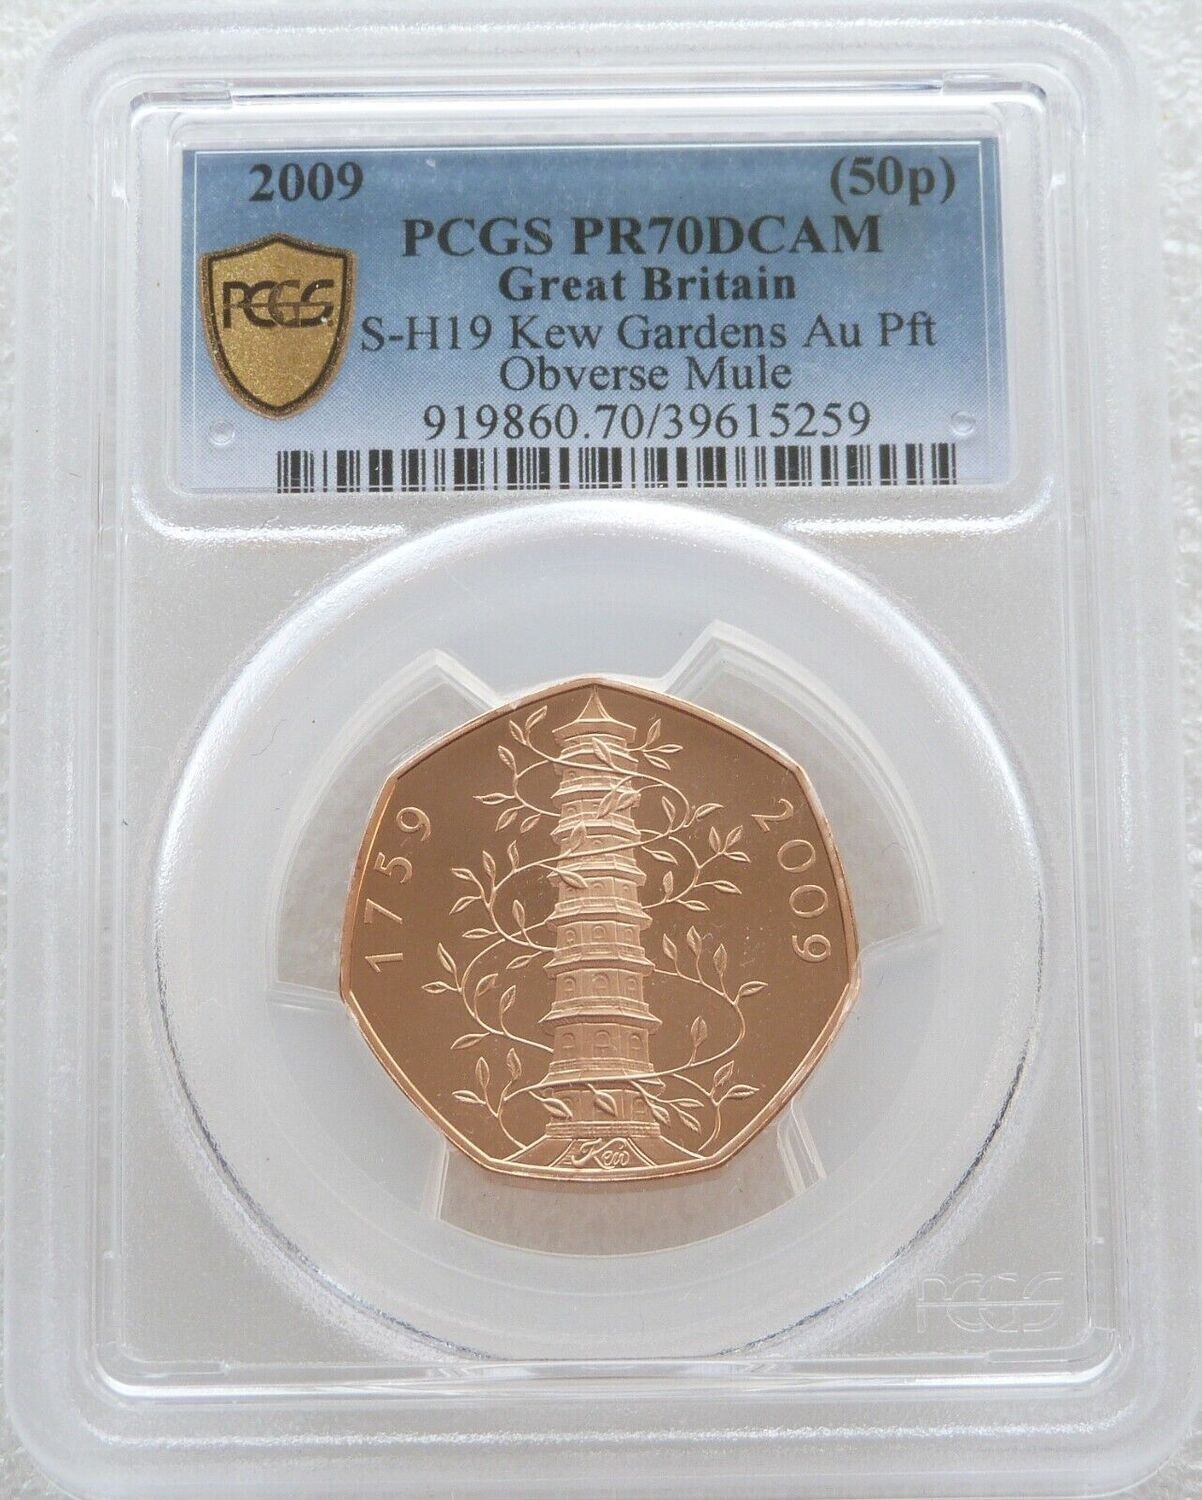 2009 Kew Gardens Piedfort Mint Error Mule 50p Gold Proof Coin PCGS PR70 DCAM - Mintage 40